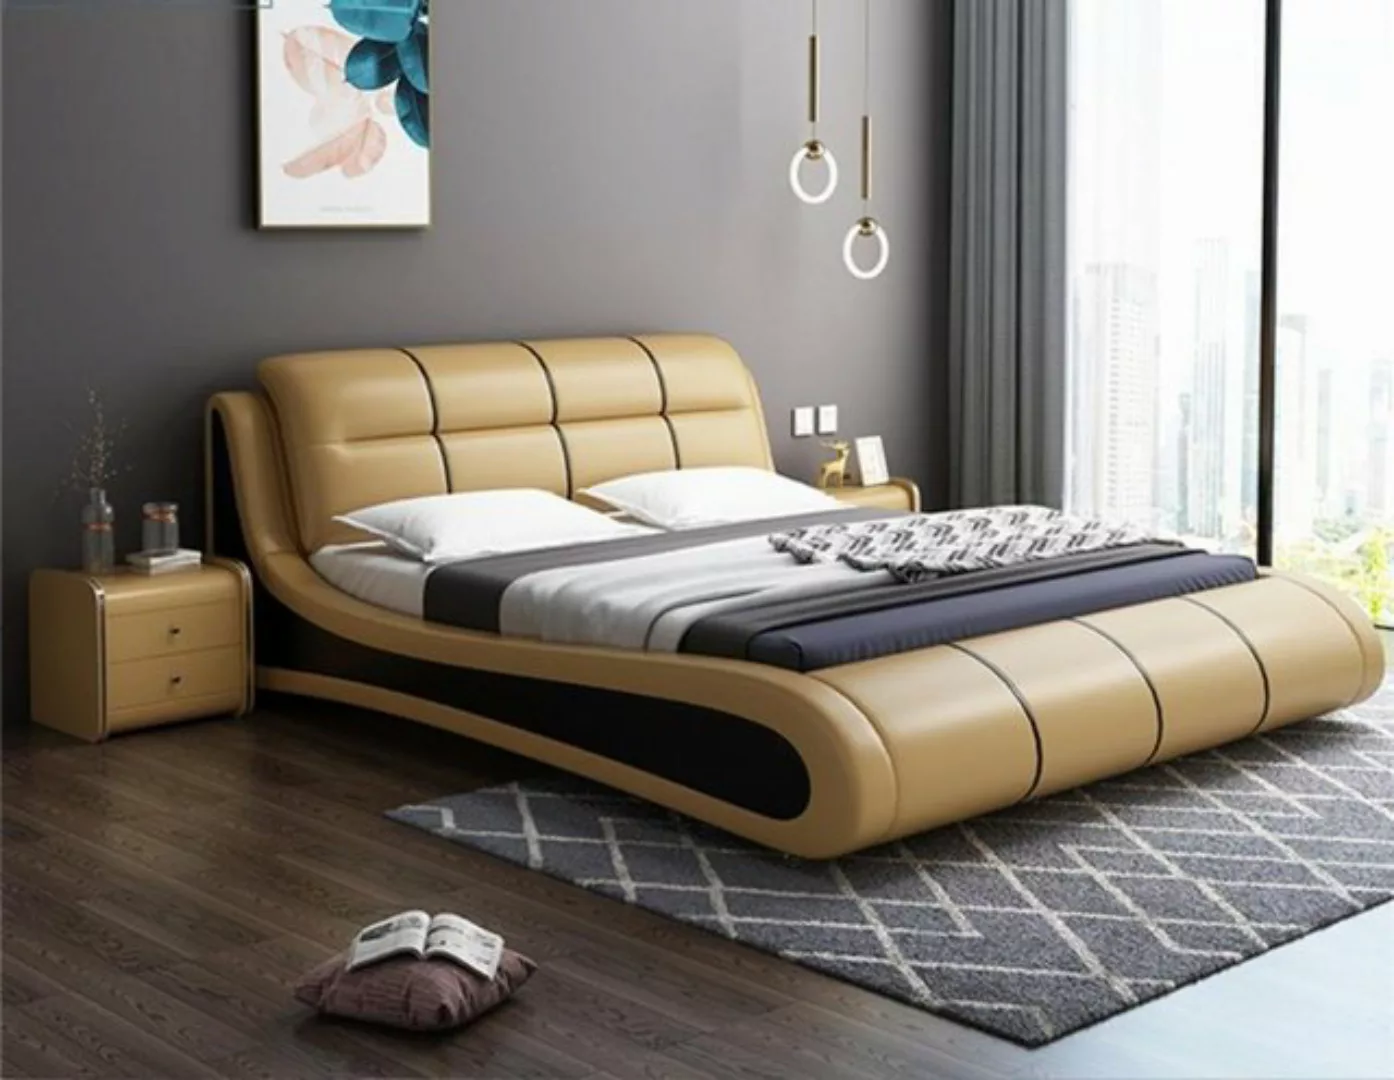 JVmoebel Bett Luxus Polster Ehe Doppel Neu Schlafzimmer Design Bett Betten günstig online kaufen